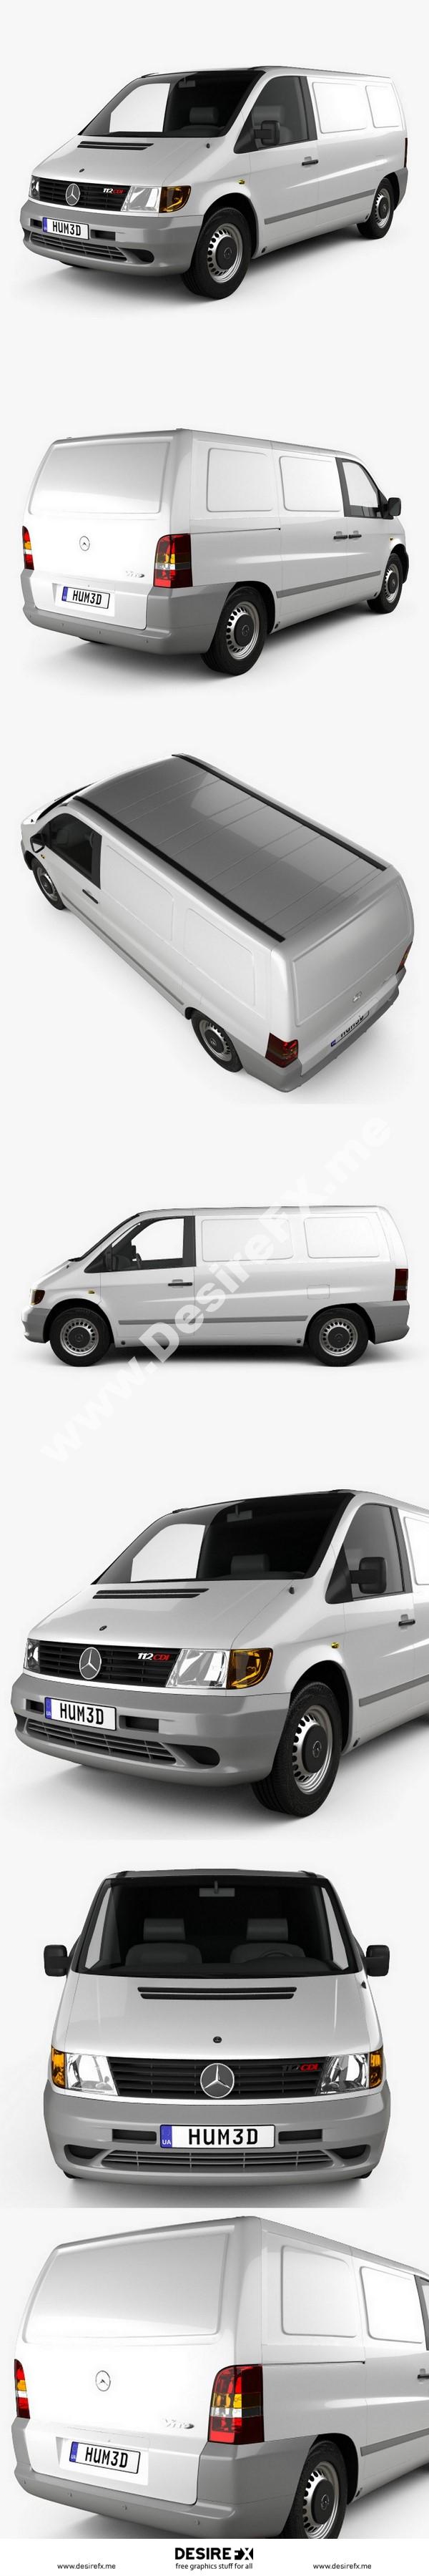 Mercedes-Benz Vito (W638) Passenger Van 2003 3D model